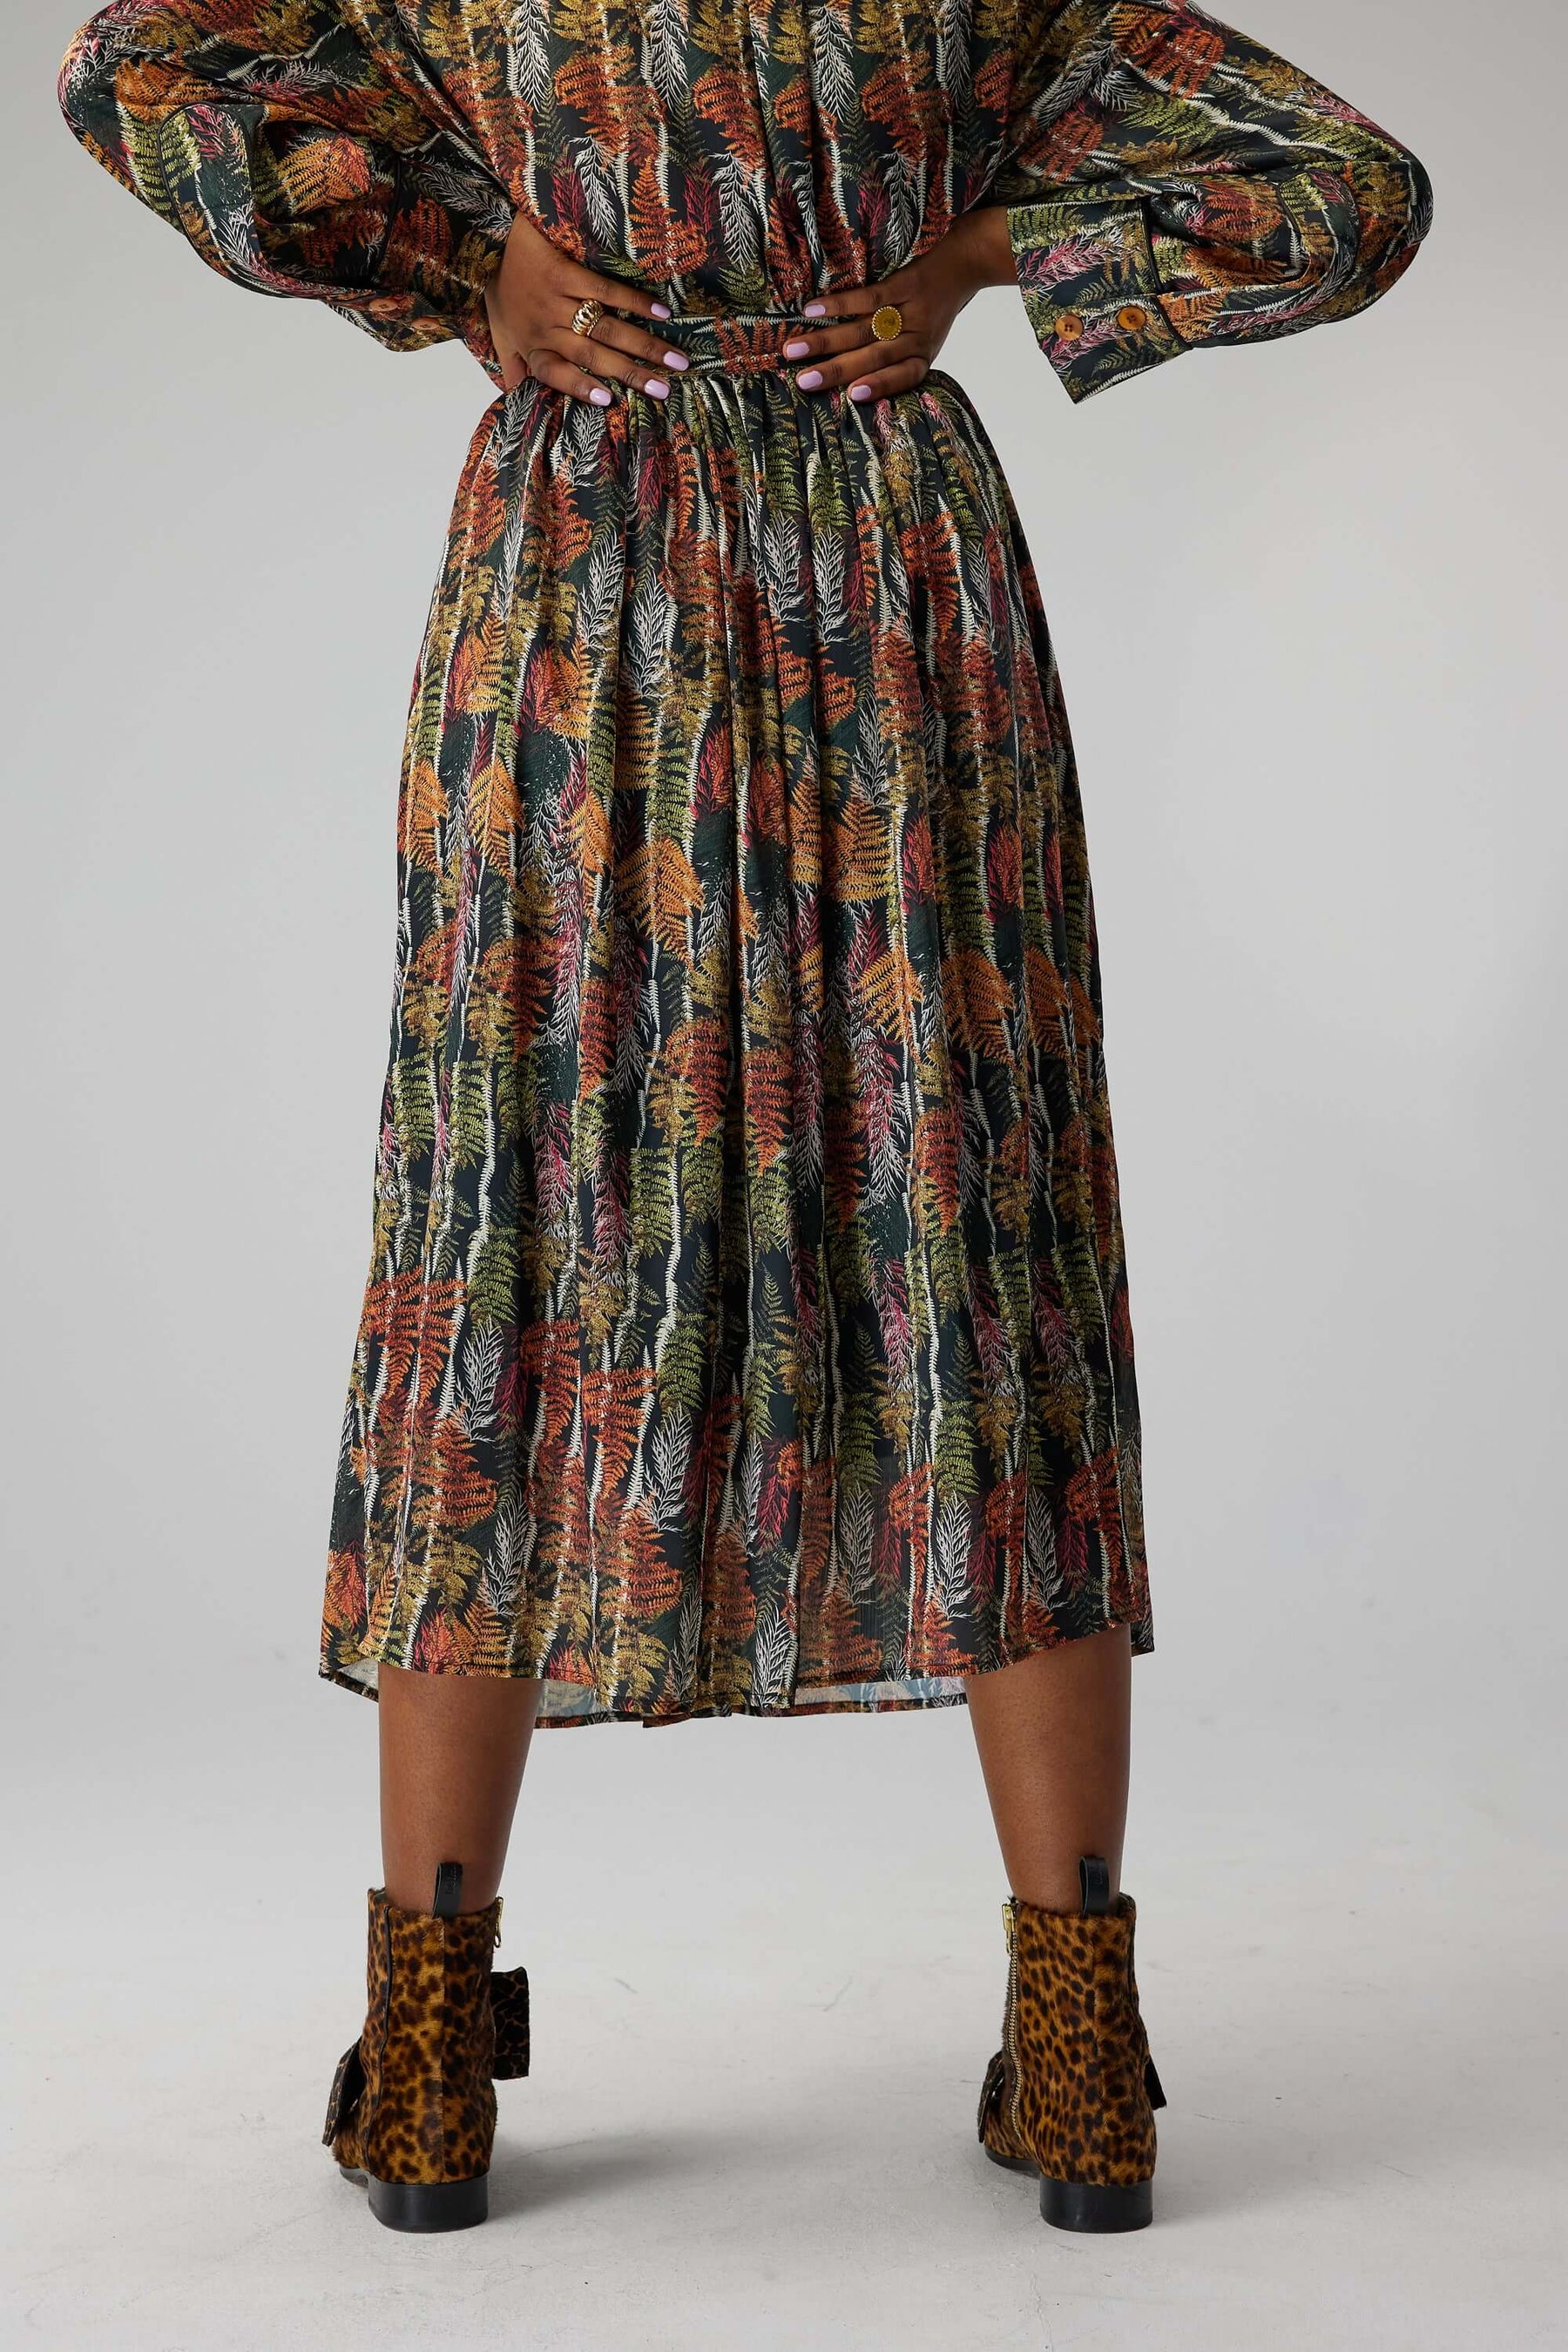 Orso skirt in Fern print